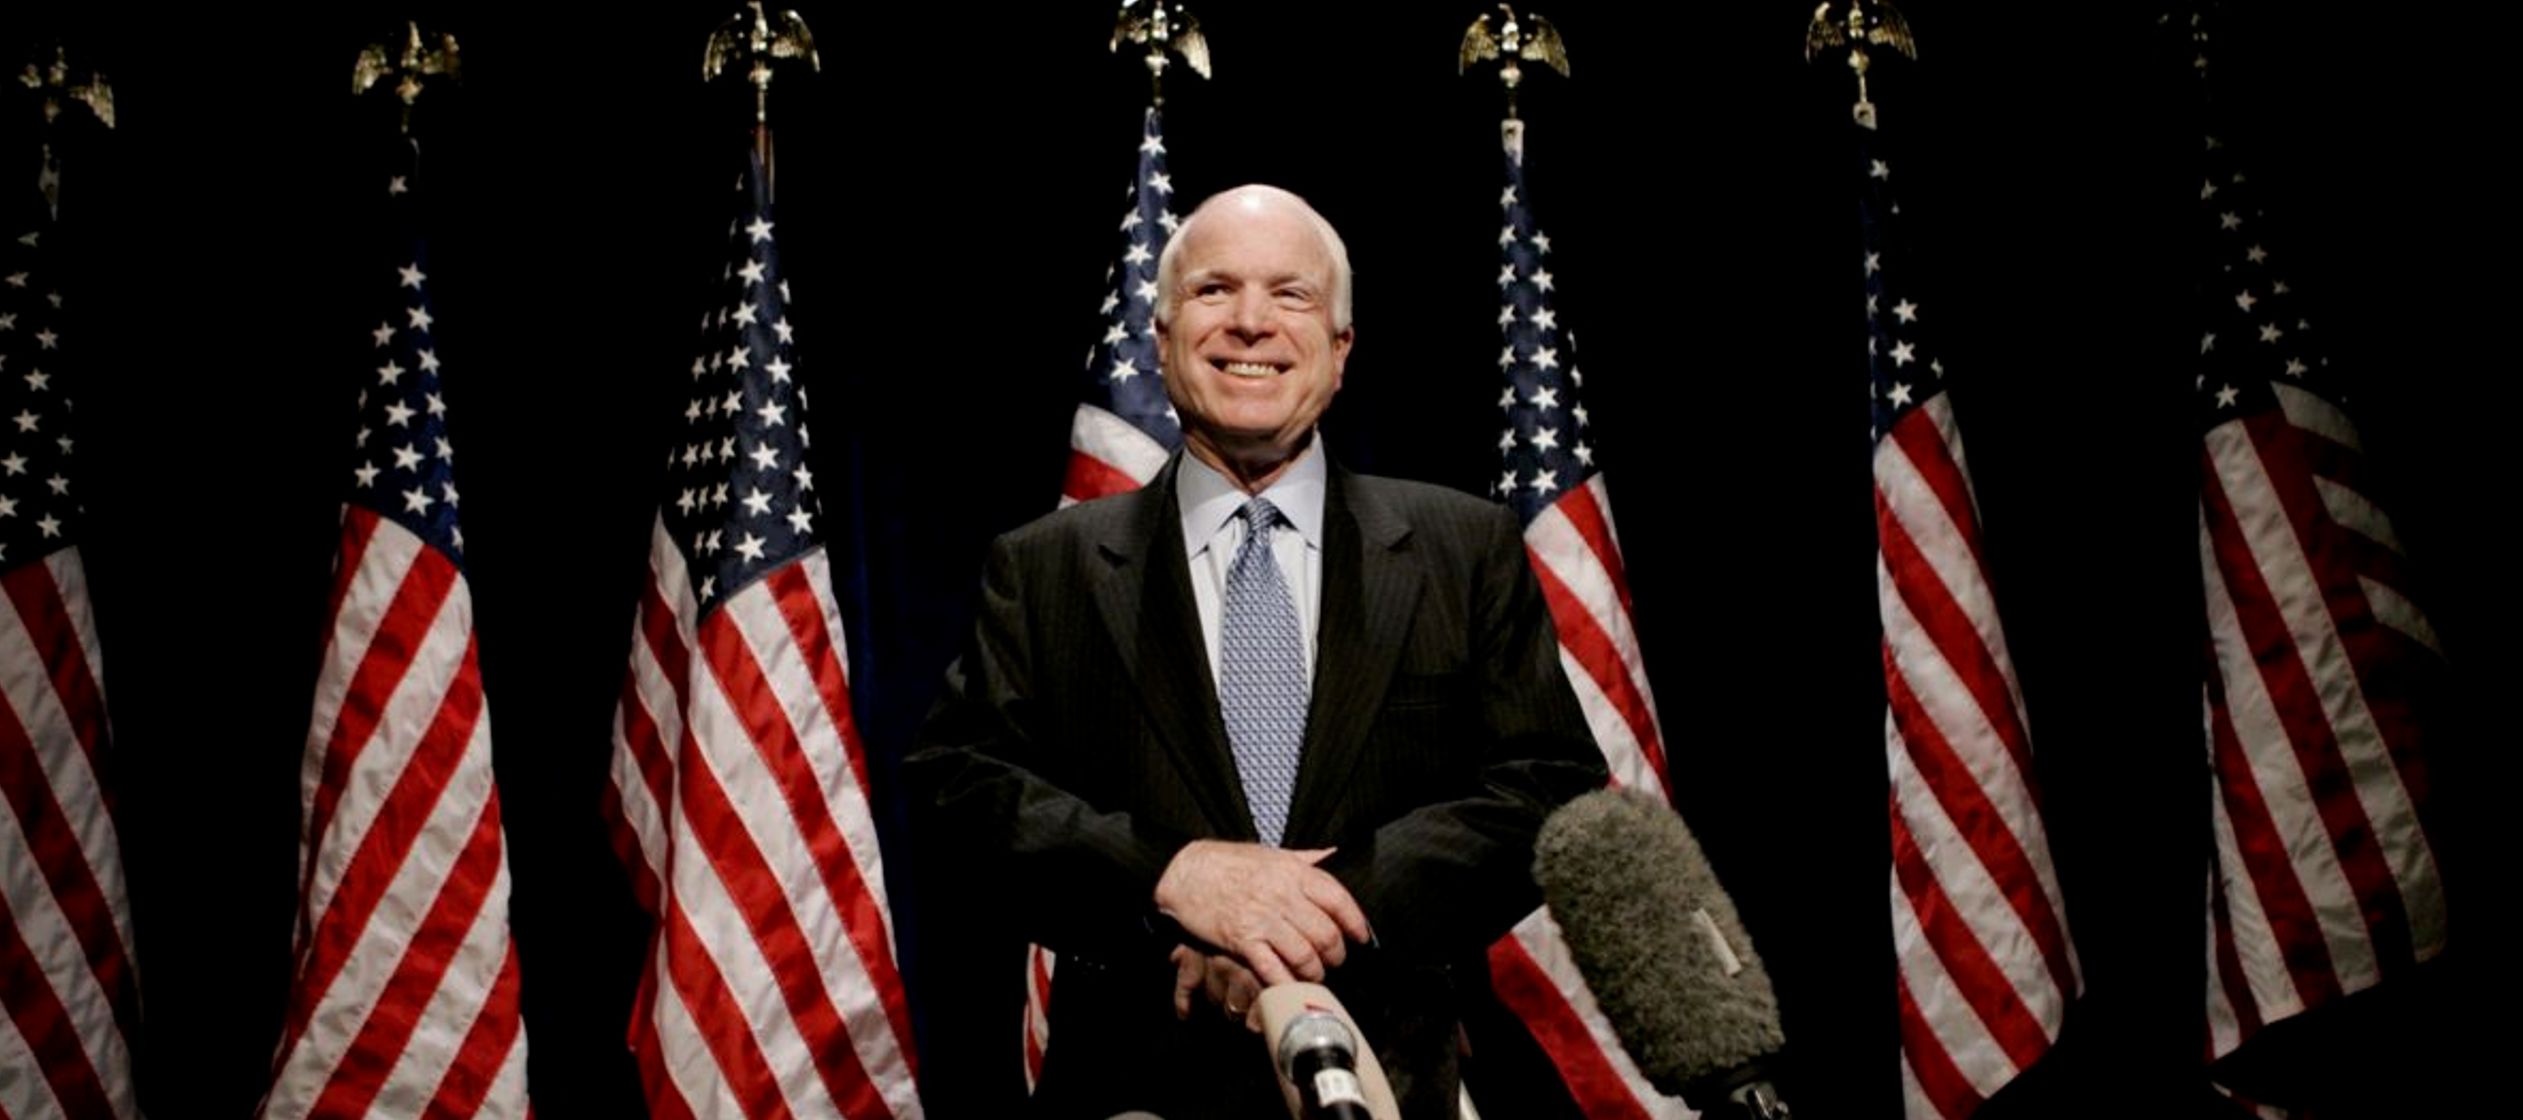 Conviene no hablar mal de los muertos y el fallecimiento de McCain debe de ser una dura noticia...